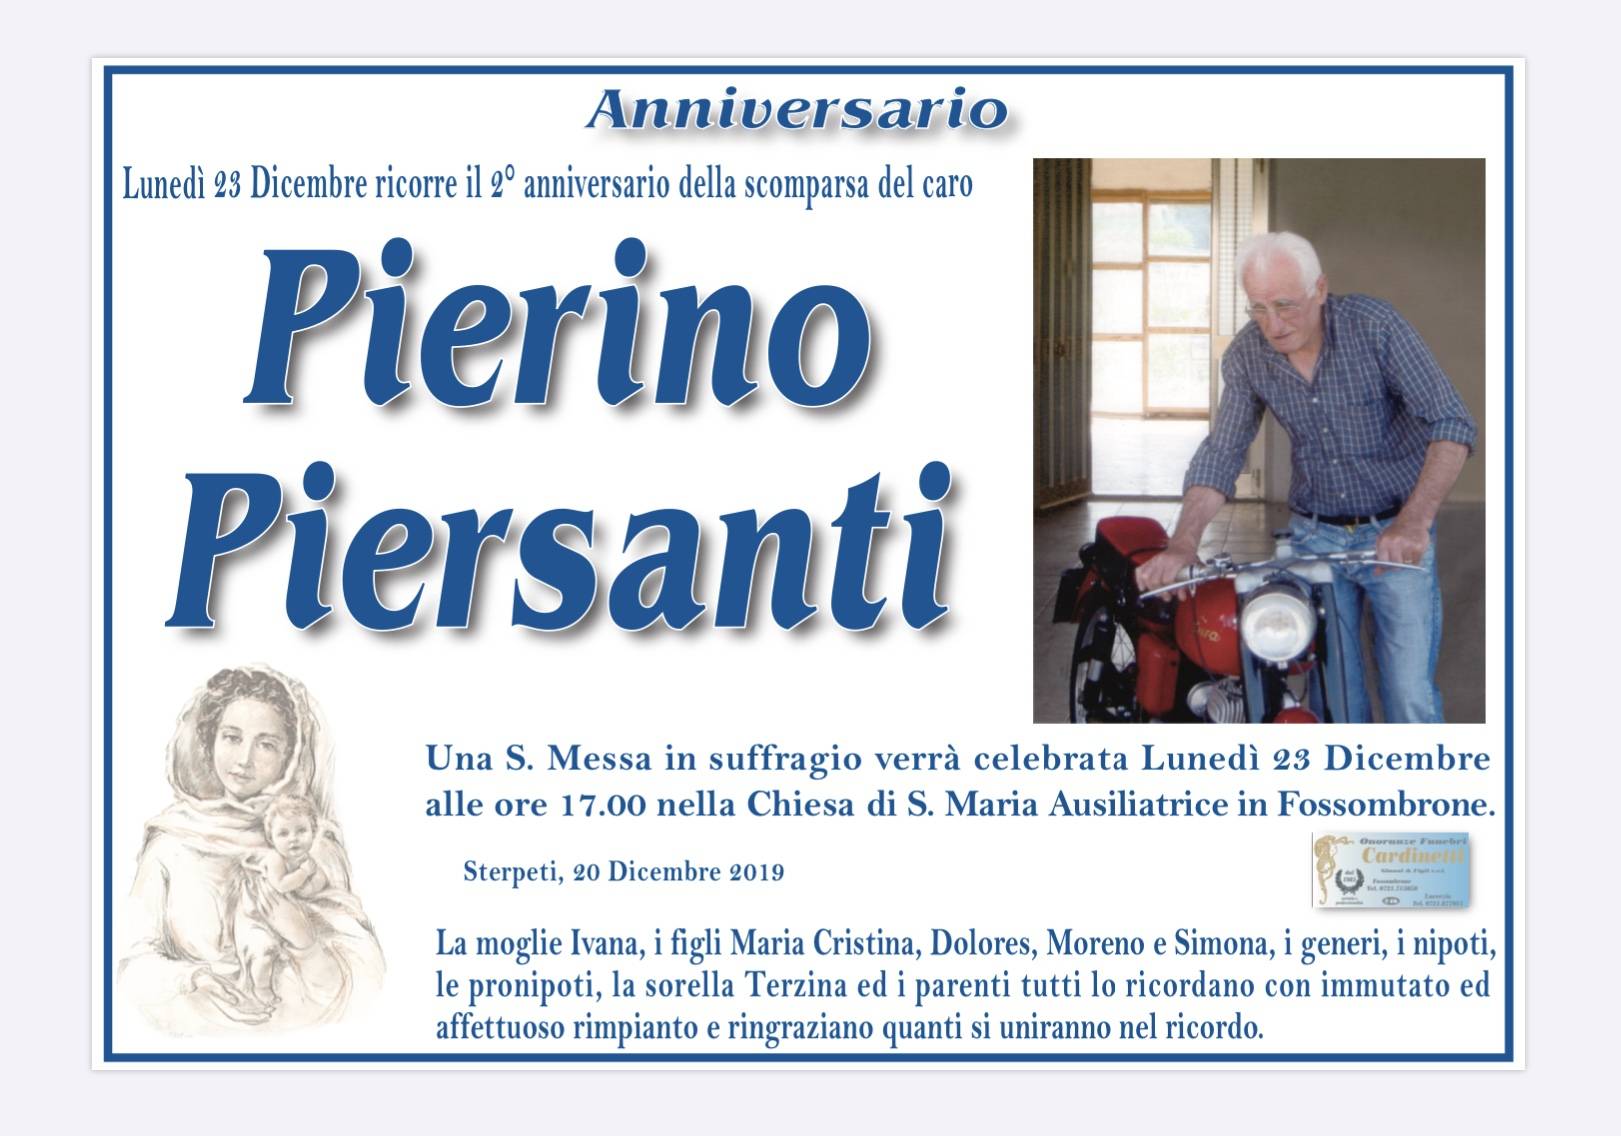 Pierino Piersanti